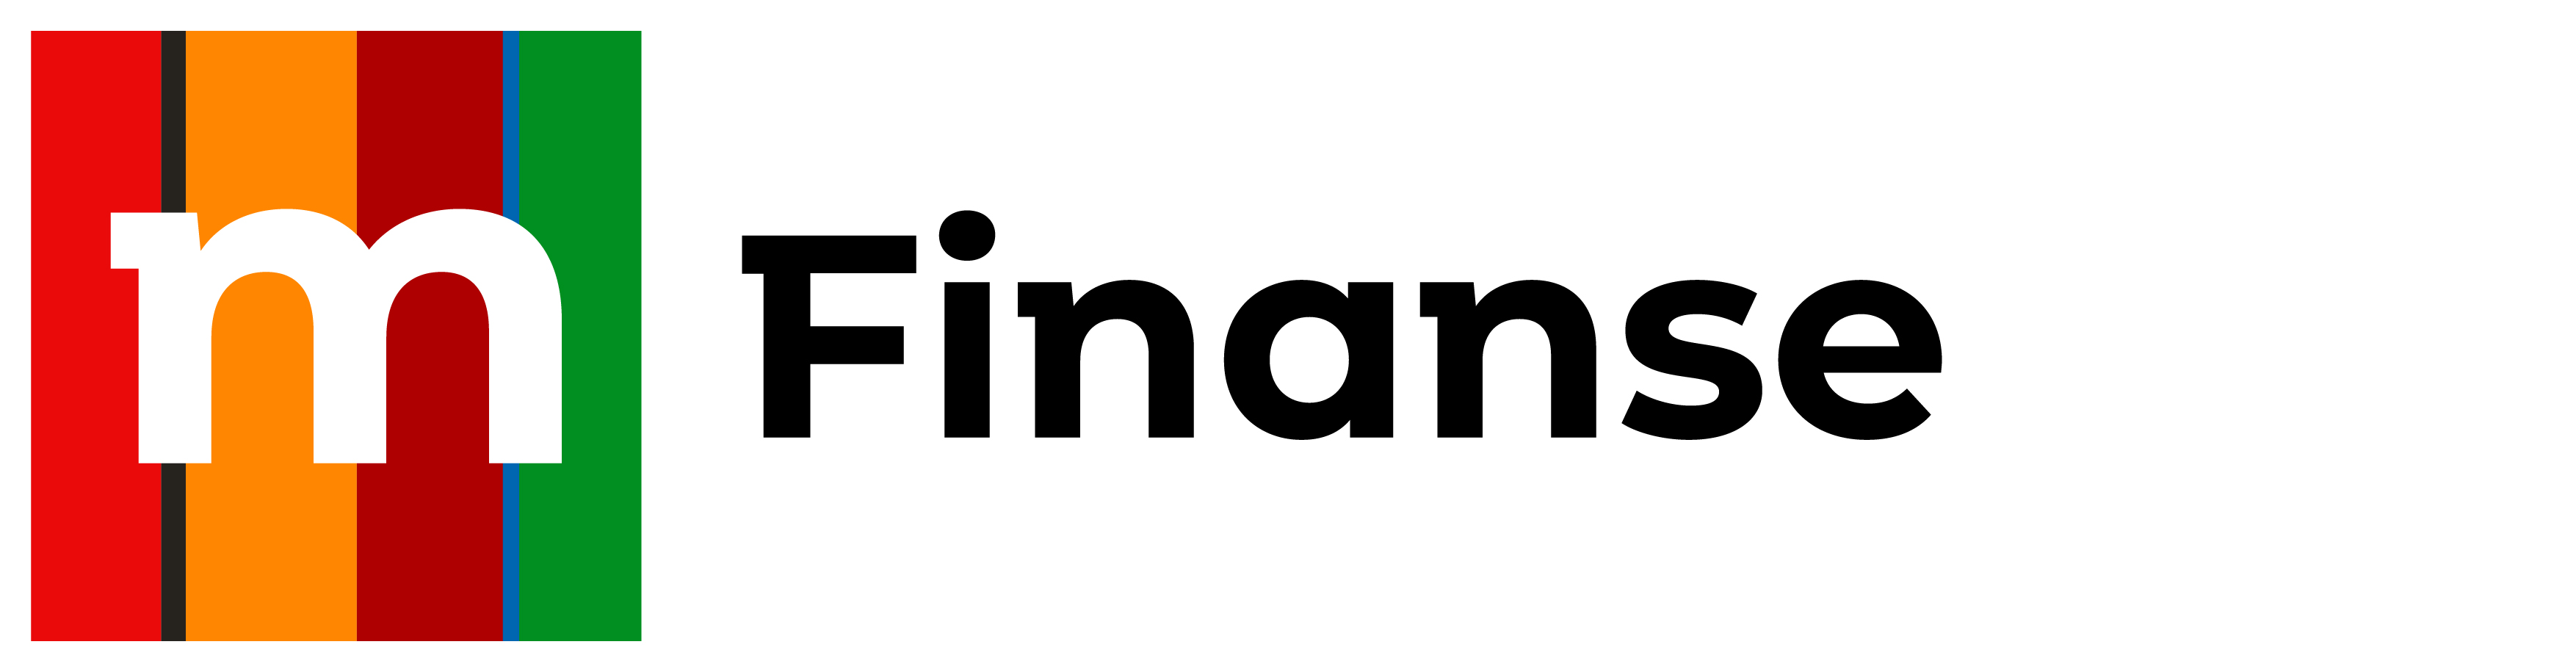 mBank logo finanse RGB